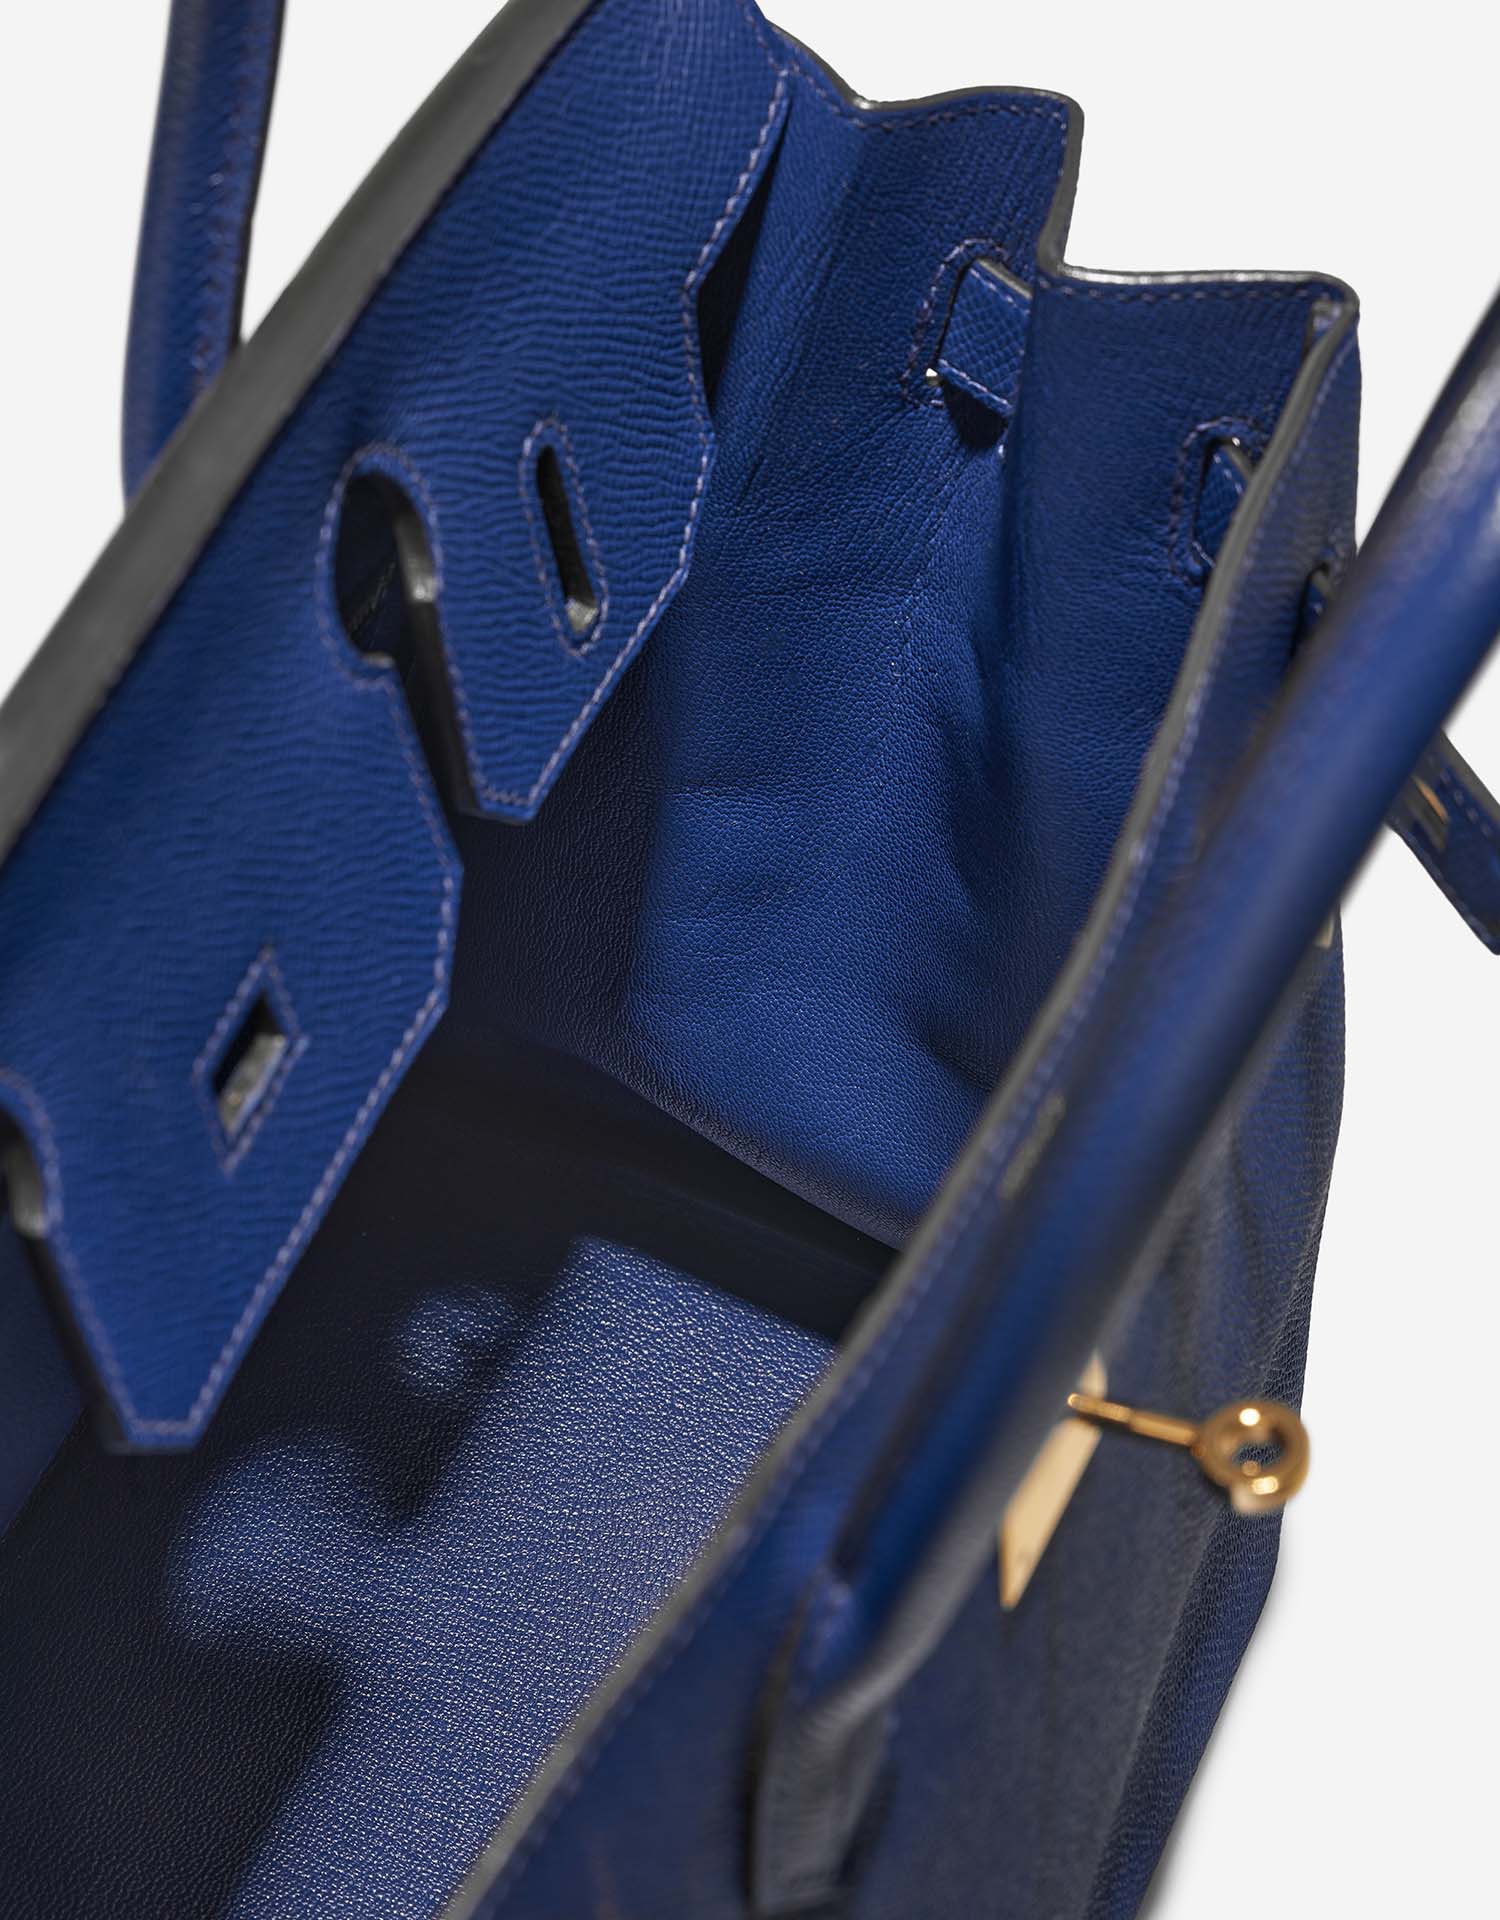 Hermès Birkin 30 BleuElectrique Inside | Verkaufen Sie Ihre Designertasche auf Saclab.com